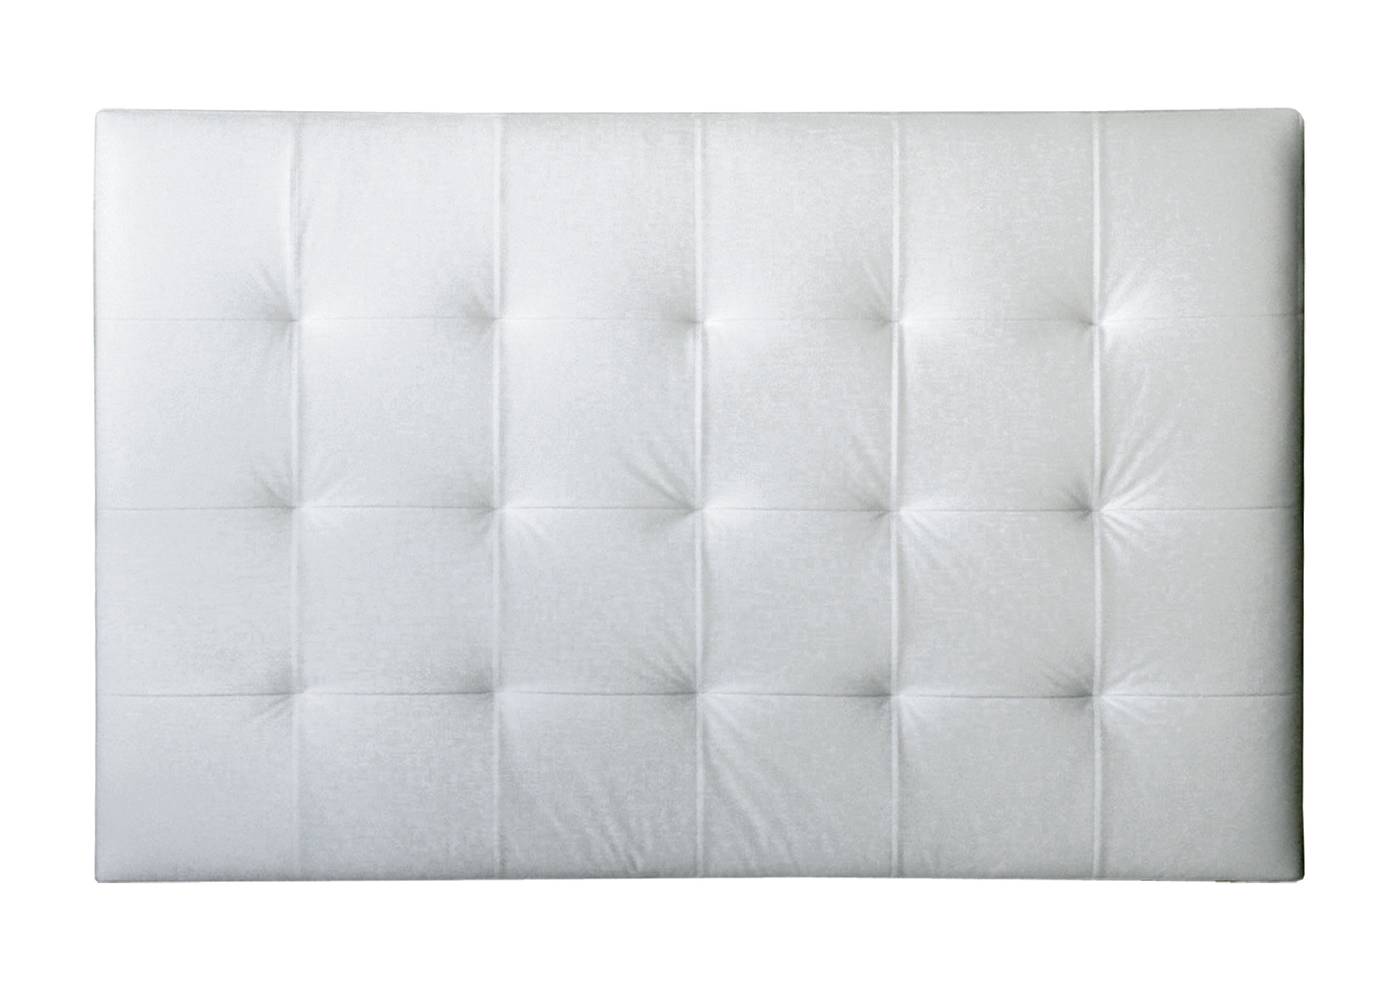 Cabezal tapizado de polipiel color blanco de 158x100 cm.